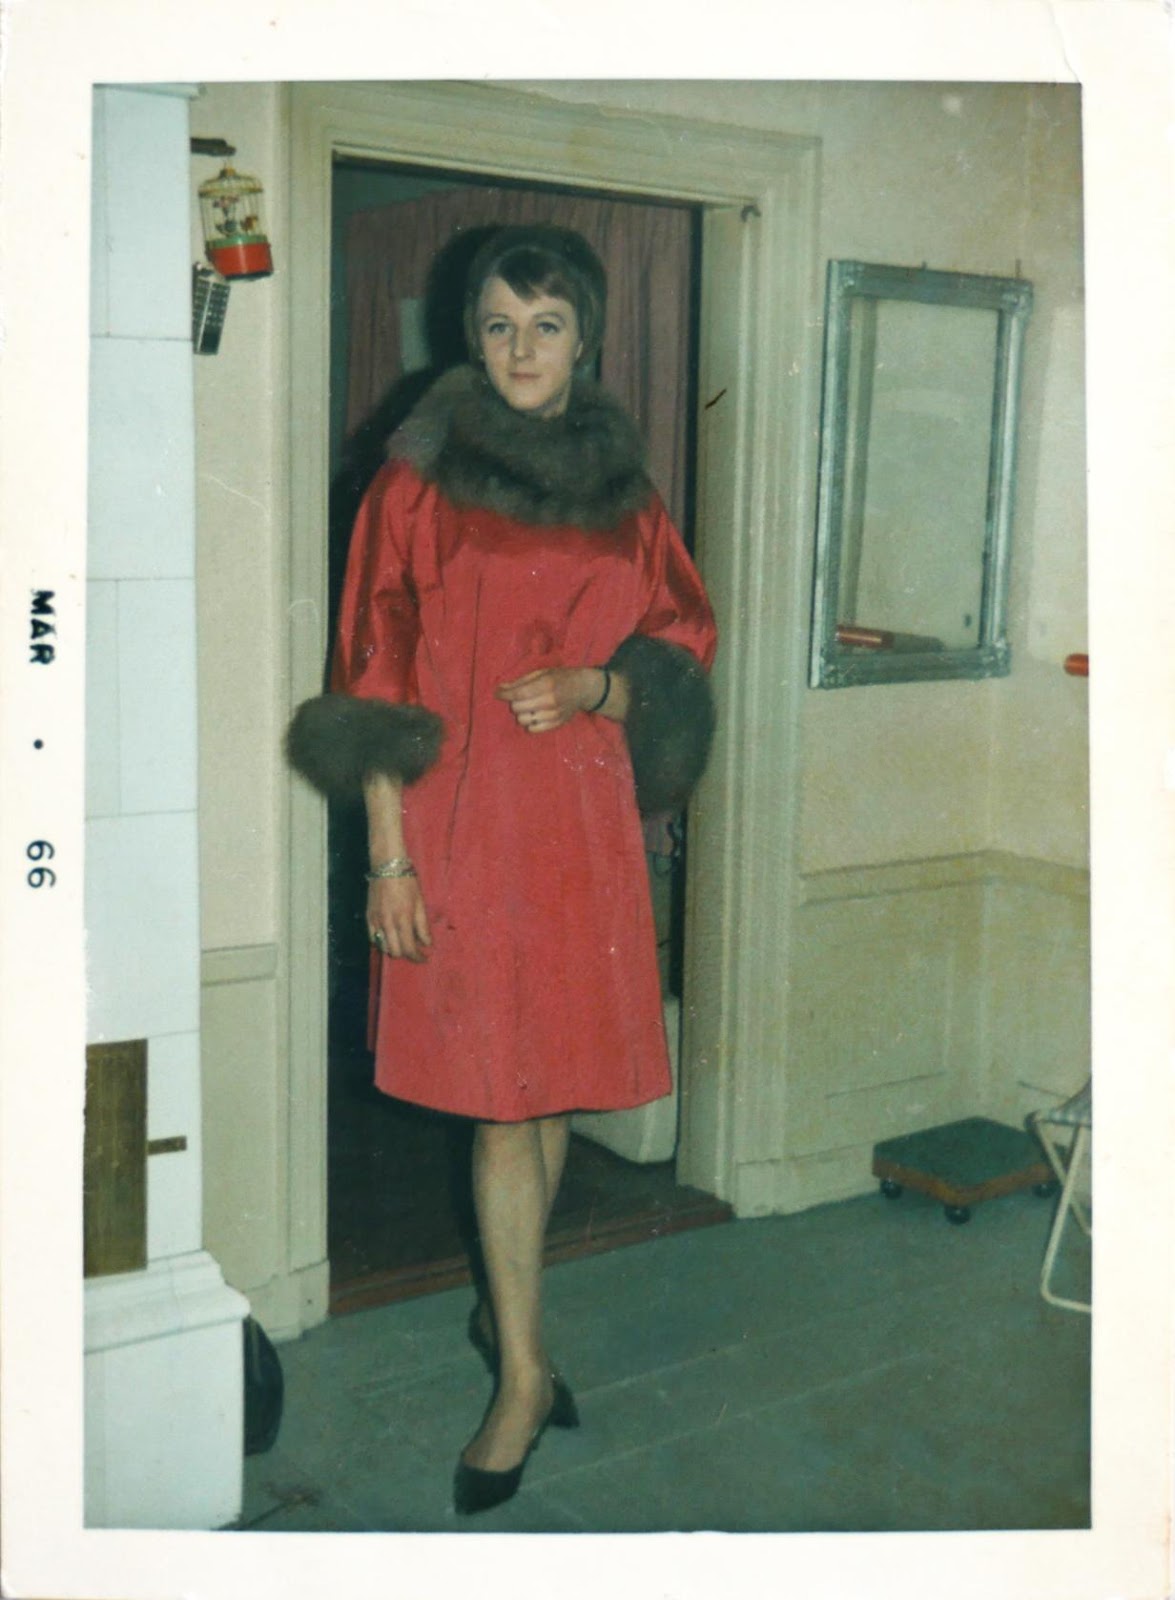 en kvinna i  fin röd sidenkappa med pälsdetaljer. fotot ser gammalt ut. I ramen står mar 66.